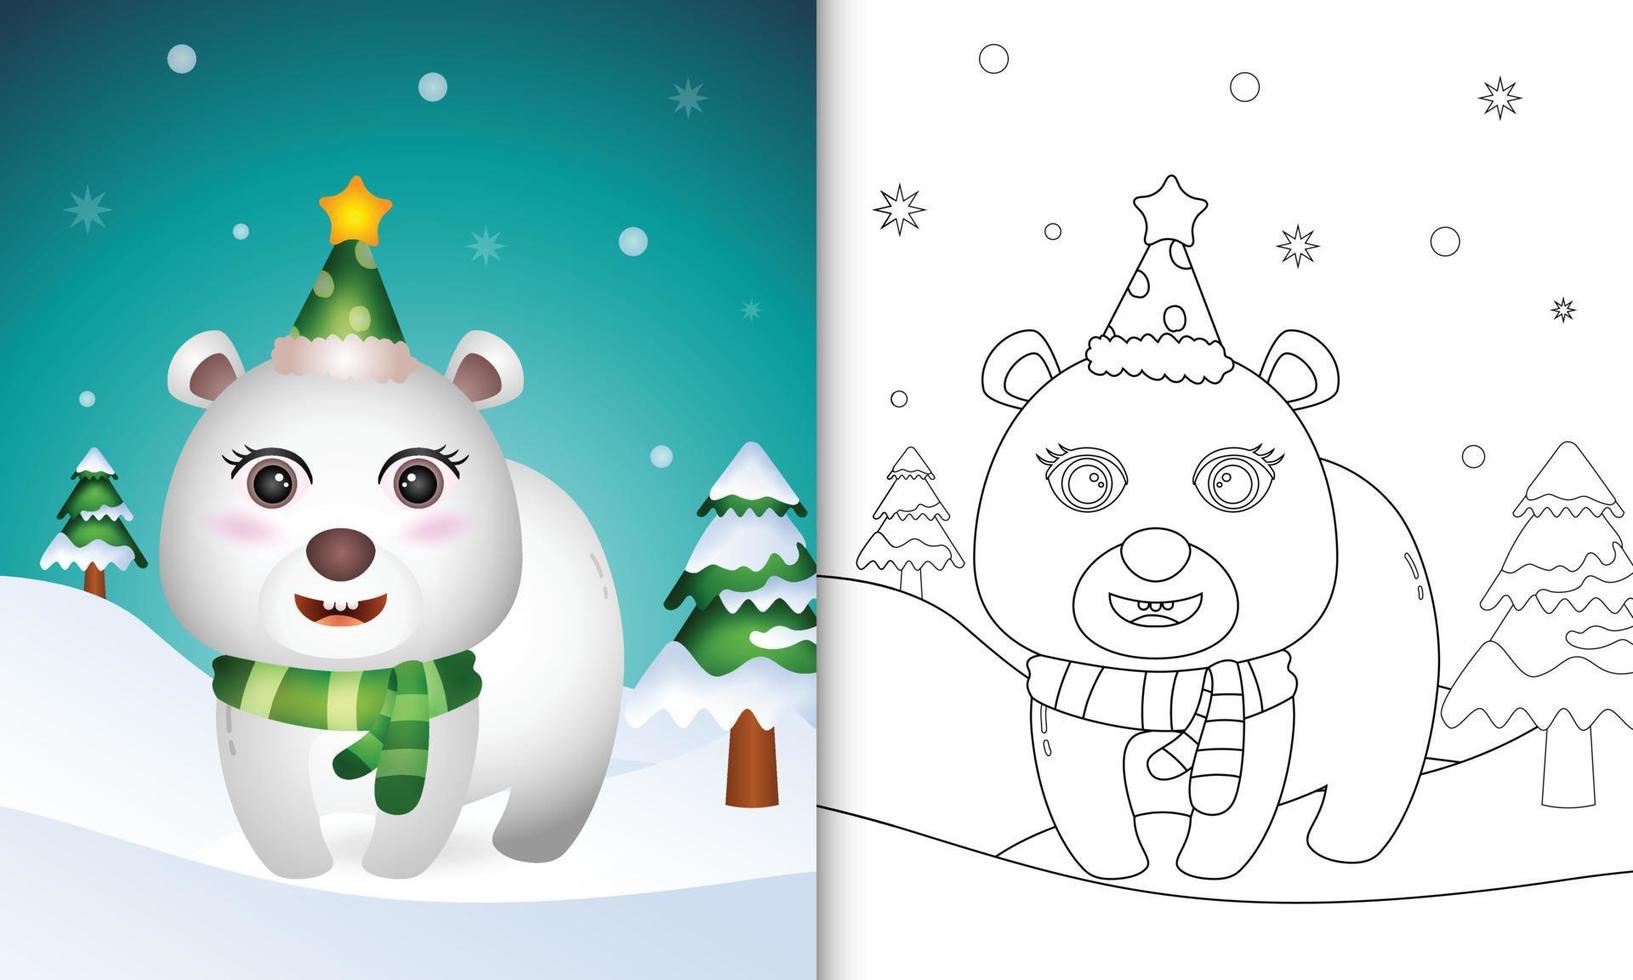 kleurboek met een schattige ijsbeer kerstkarakters collectie met een muts en sjaal vector